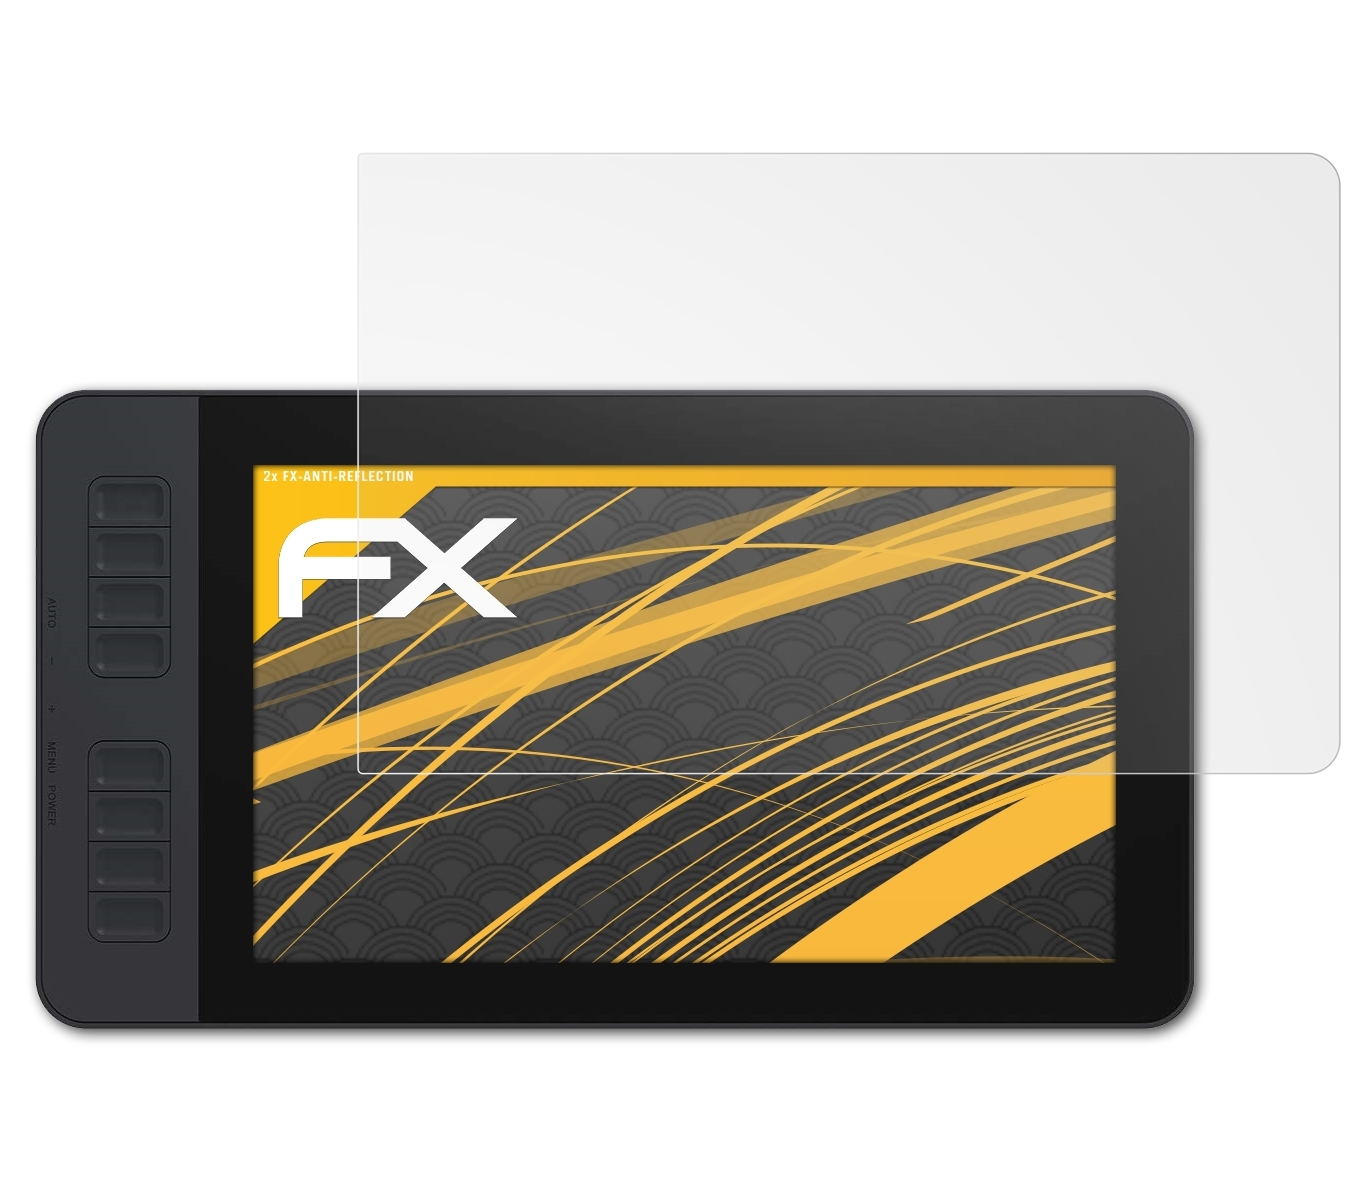 PD1161) FX-Antireflex 2x Displayschutz(für Gaomon ATFOLIX